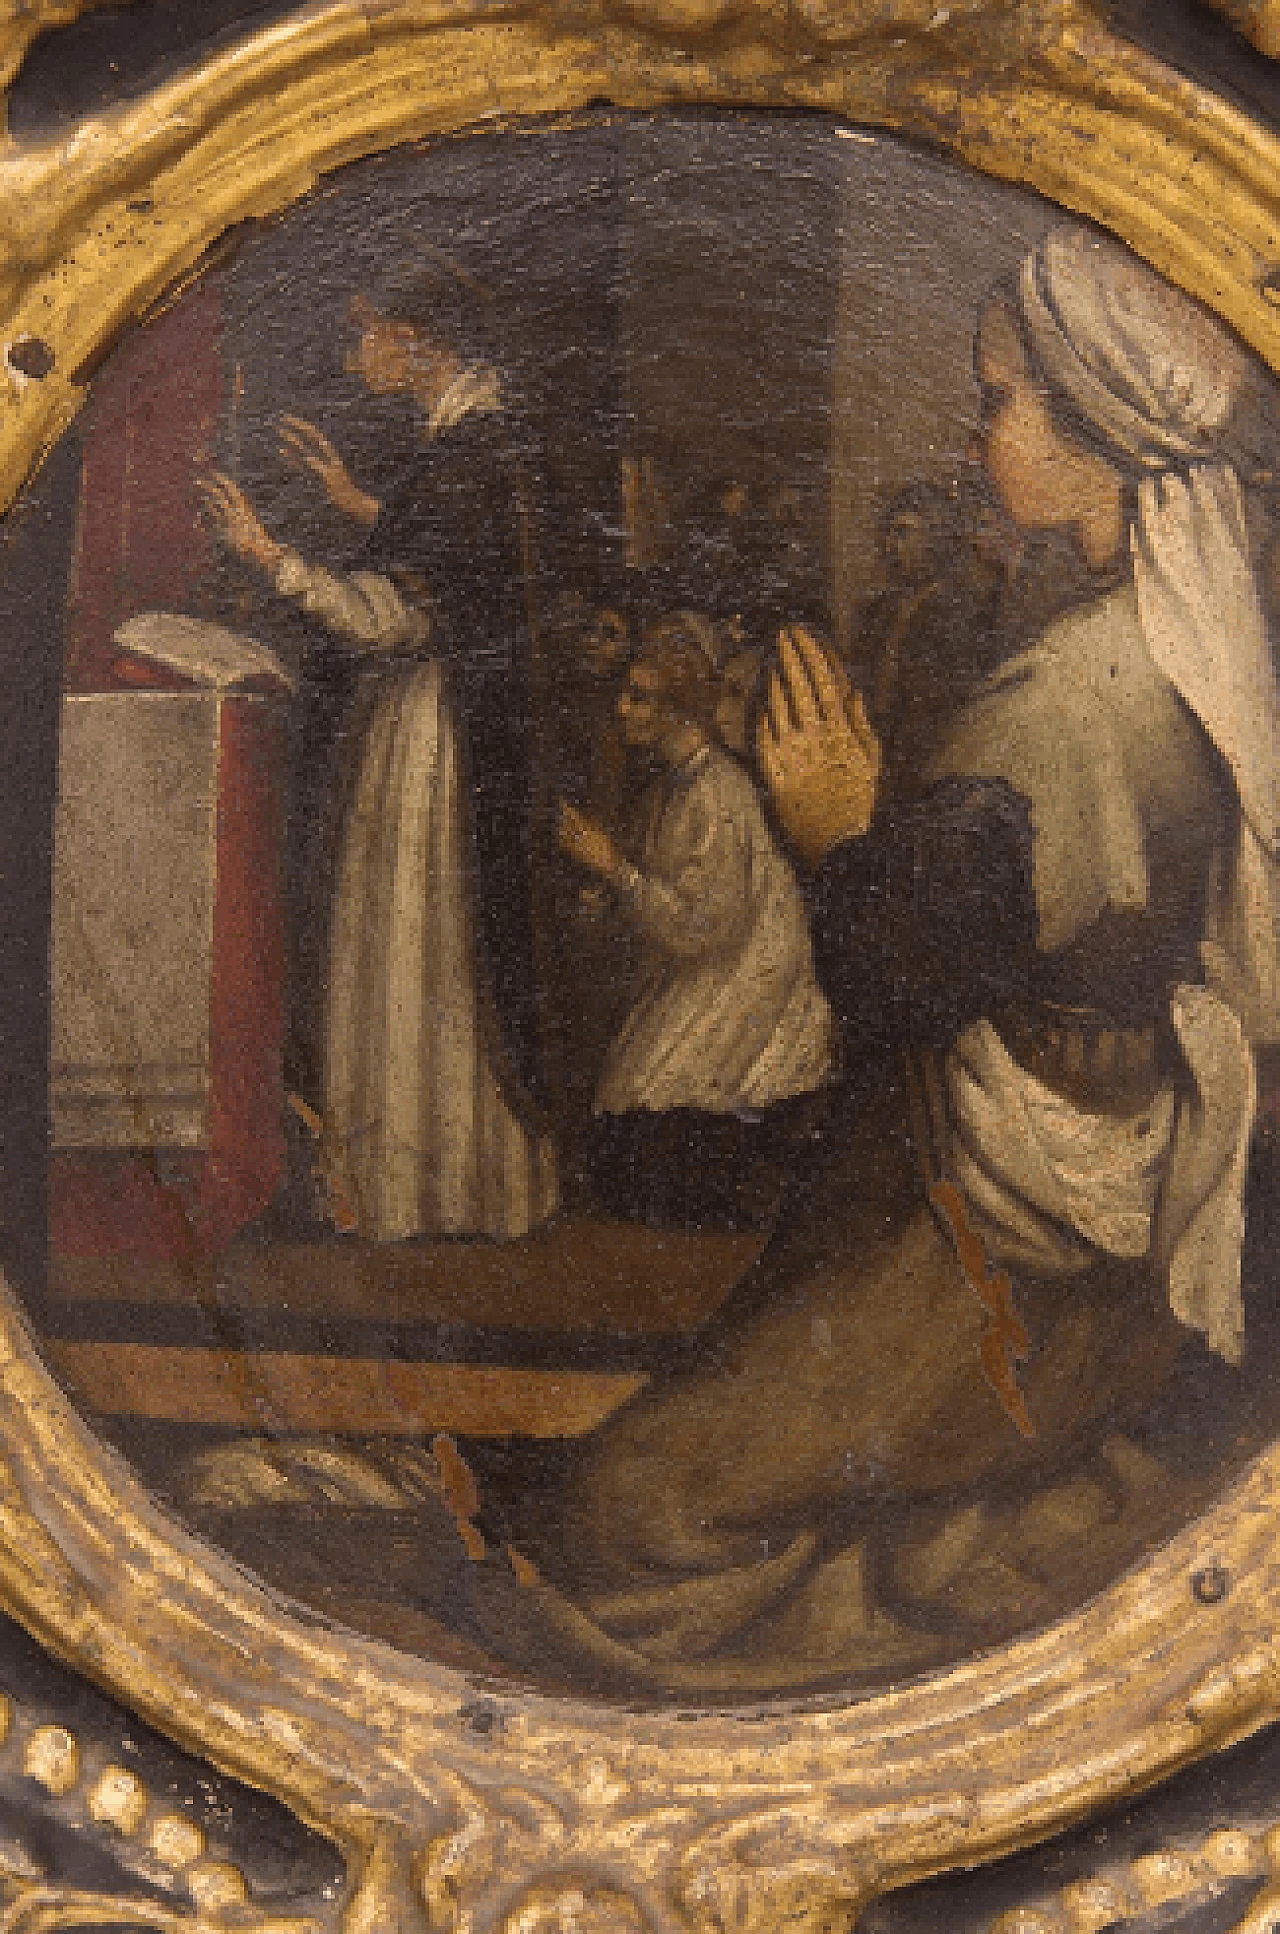 Dipinto della Predica di San Pietro attribuito a Nicolas-André Monsiau, '700 2